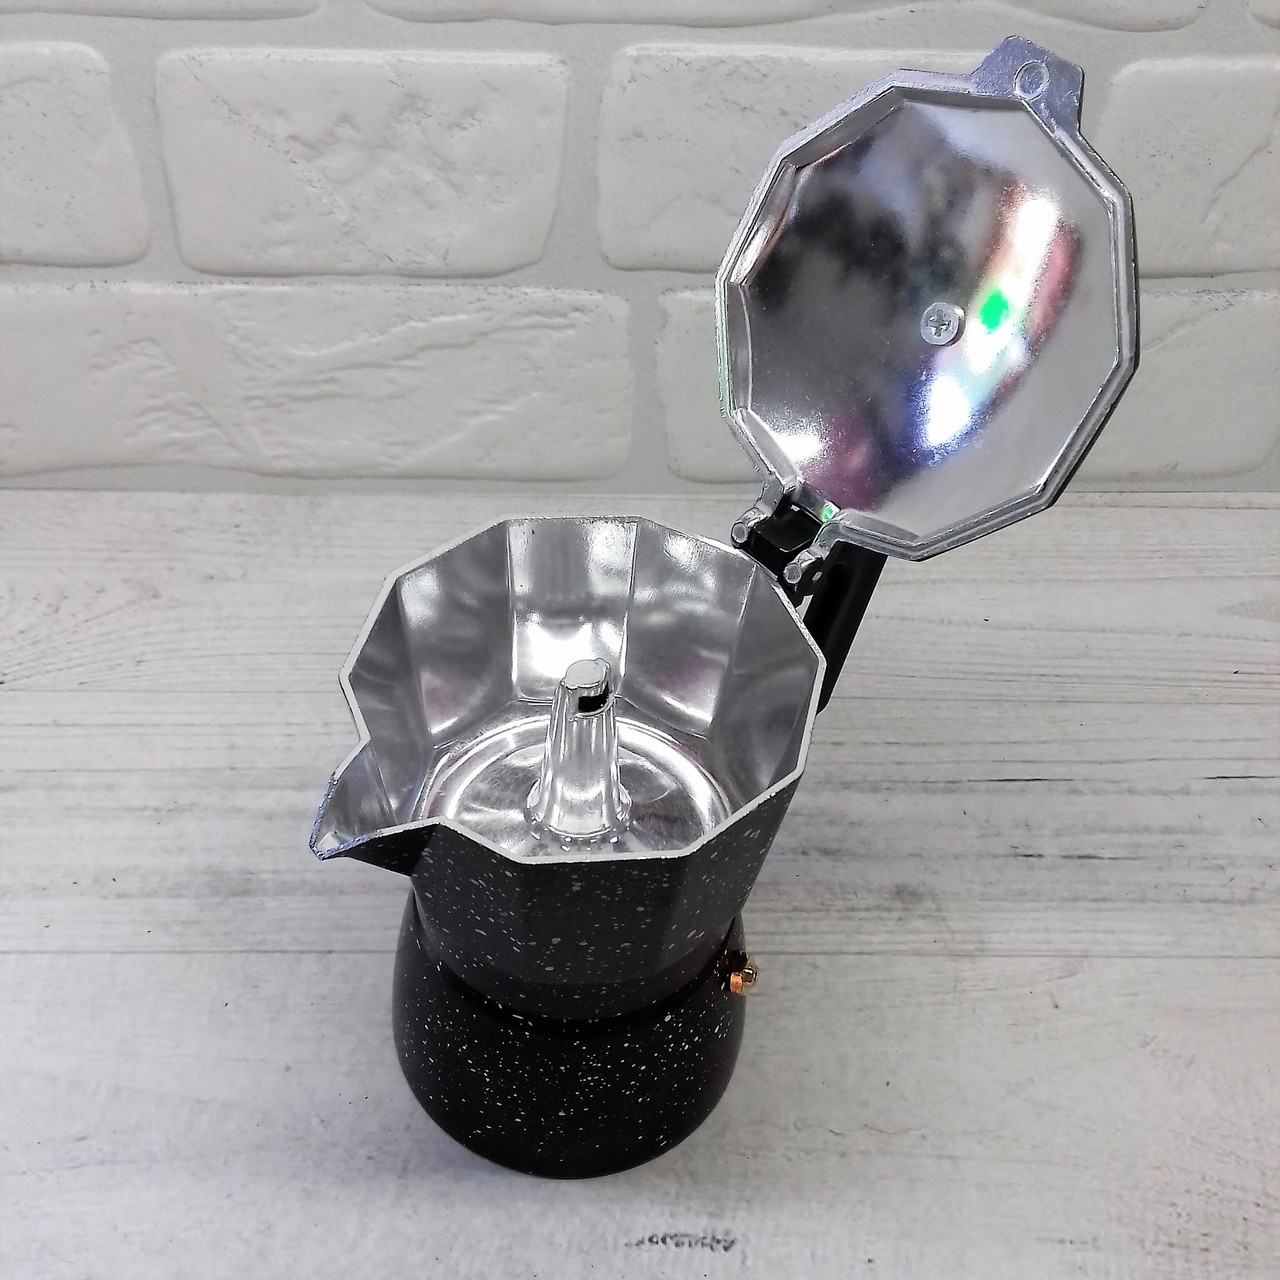 Кофеварка гейзерная алюминиевая 6 чашек мраморное покрытие Edenberg EB - 3785 ✅ базовая цена $7.09 ✔ Опт ✔ Скидки ✔ Заходите! - Интернет-магазин ✅ Фортуна-опт ✅